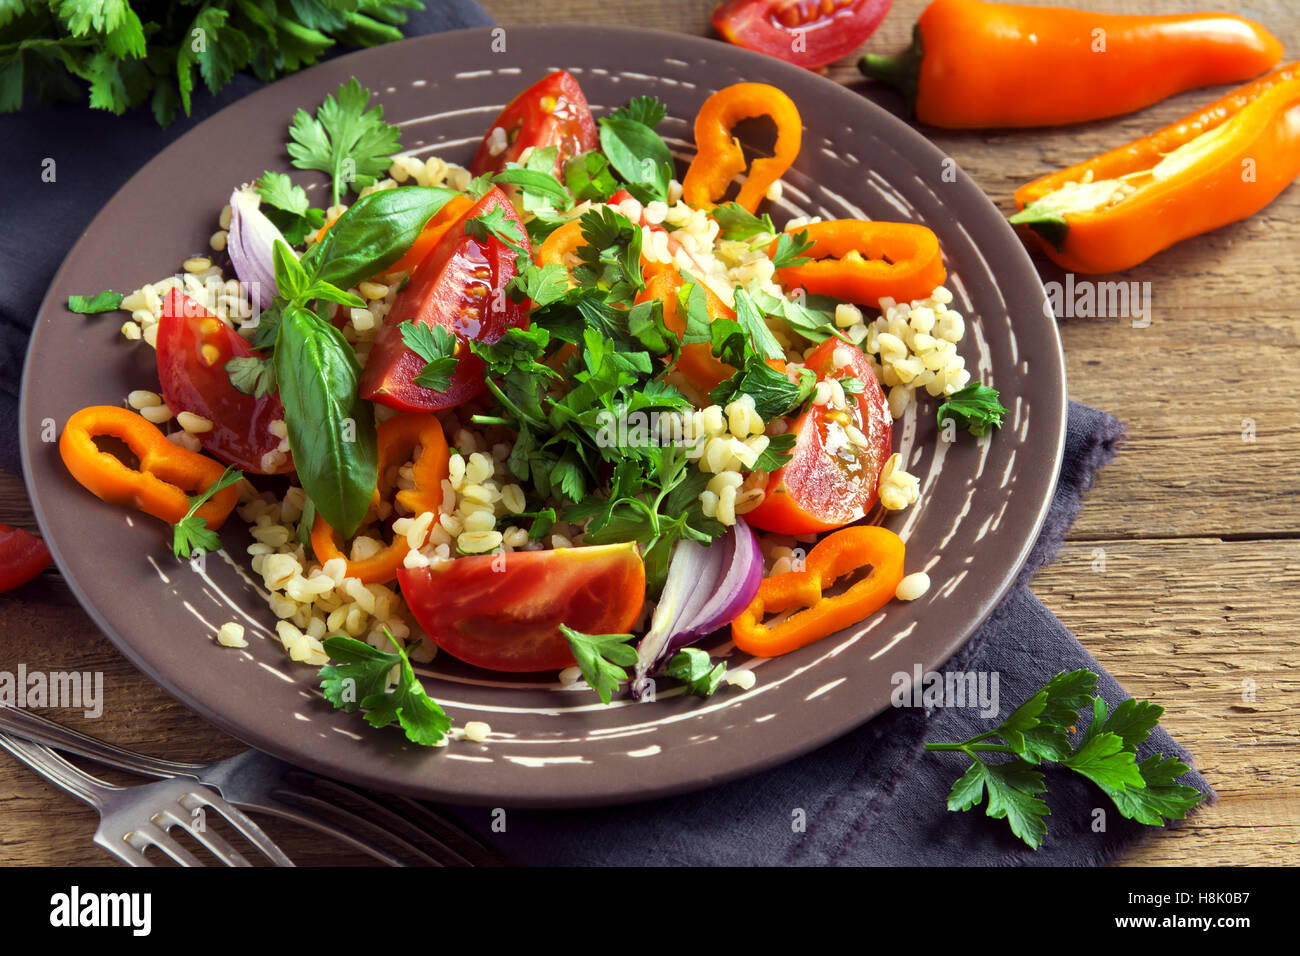 Fresco di pomodoro organico e il couscous con insalata di verdure e verdi - sana insalata vegetariana sulla piastra rustico close up Foto Stock